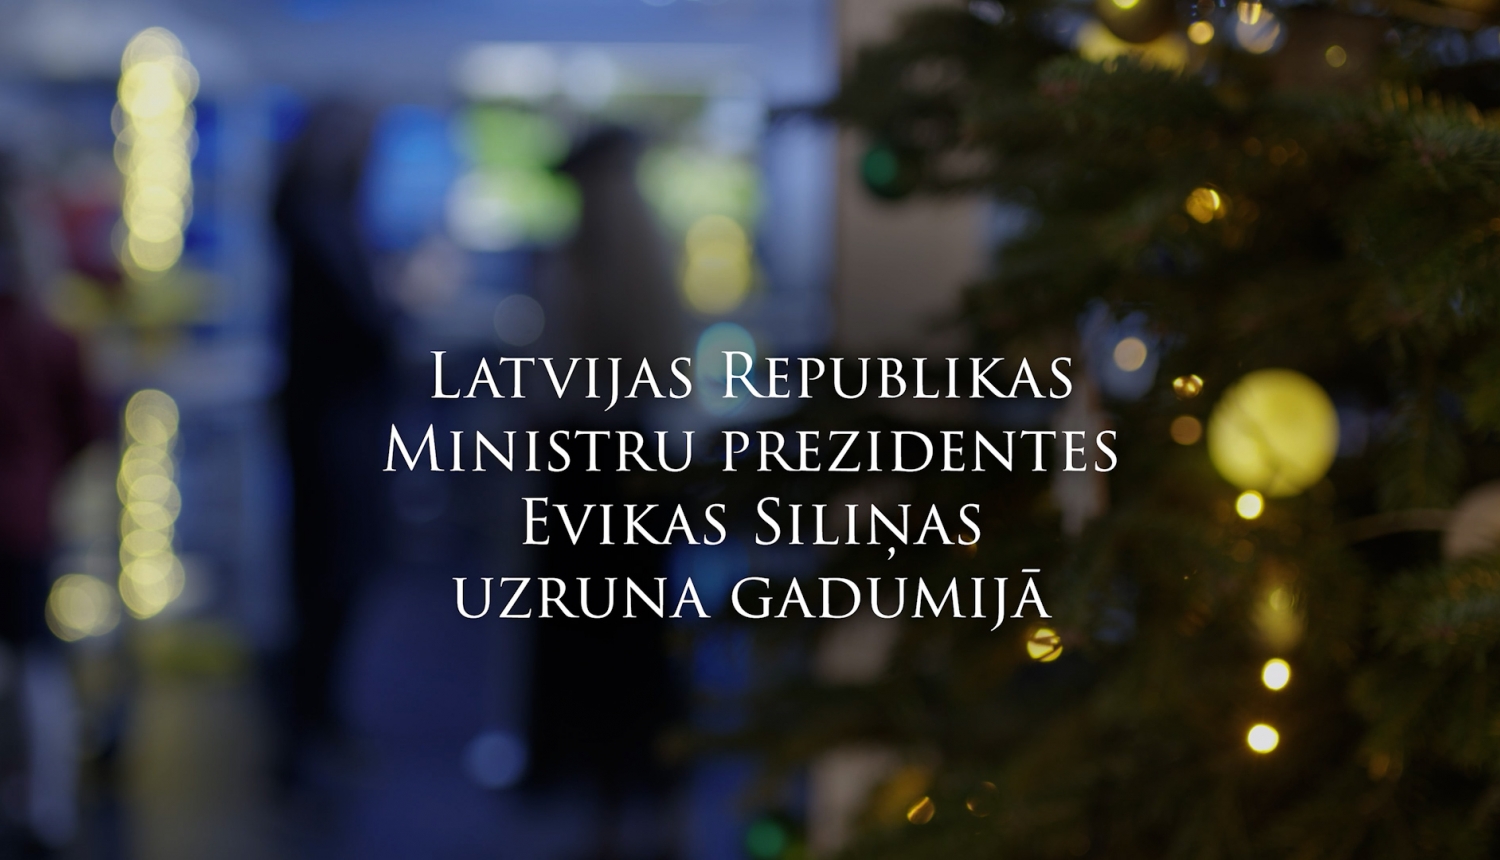 Ministru prezidentes Evikas Siliņas gadumijas uzruna